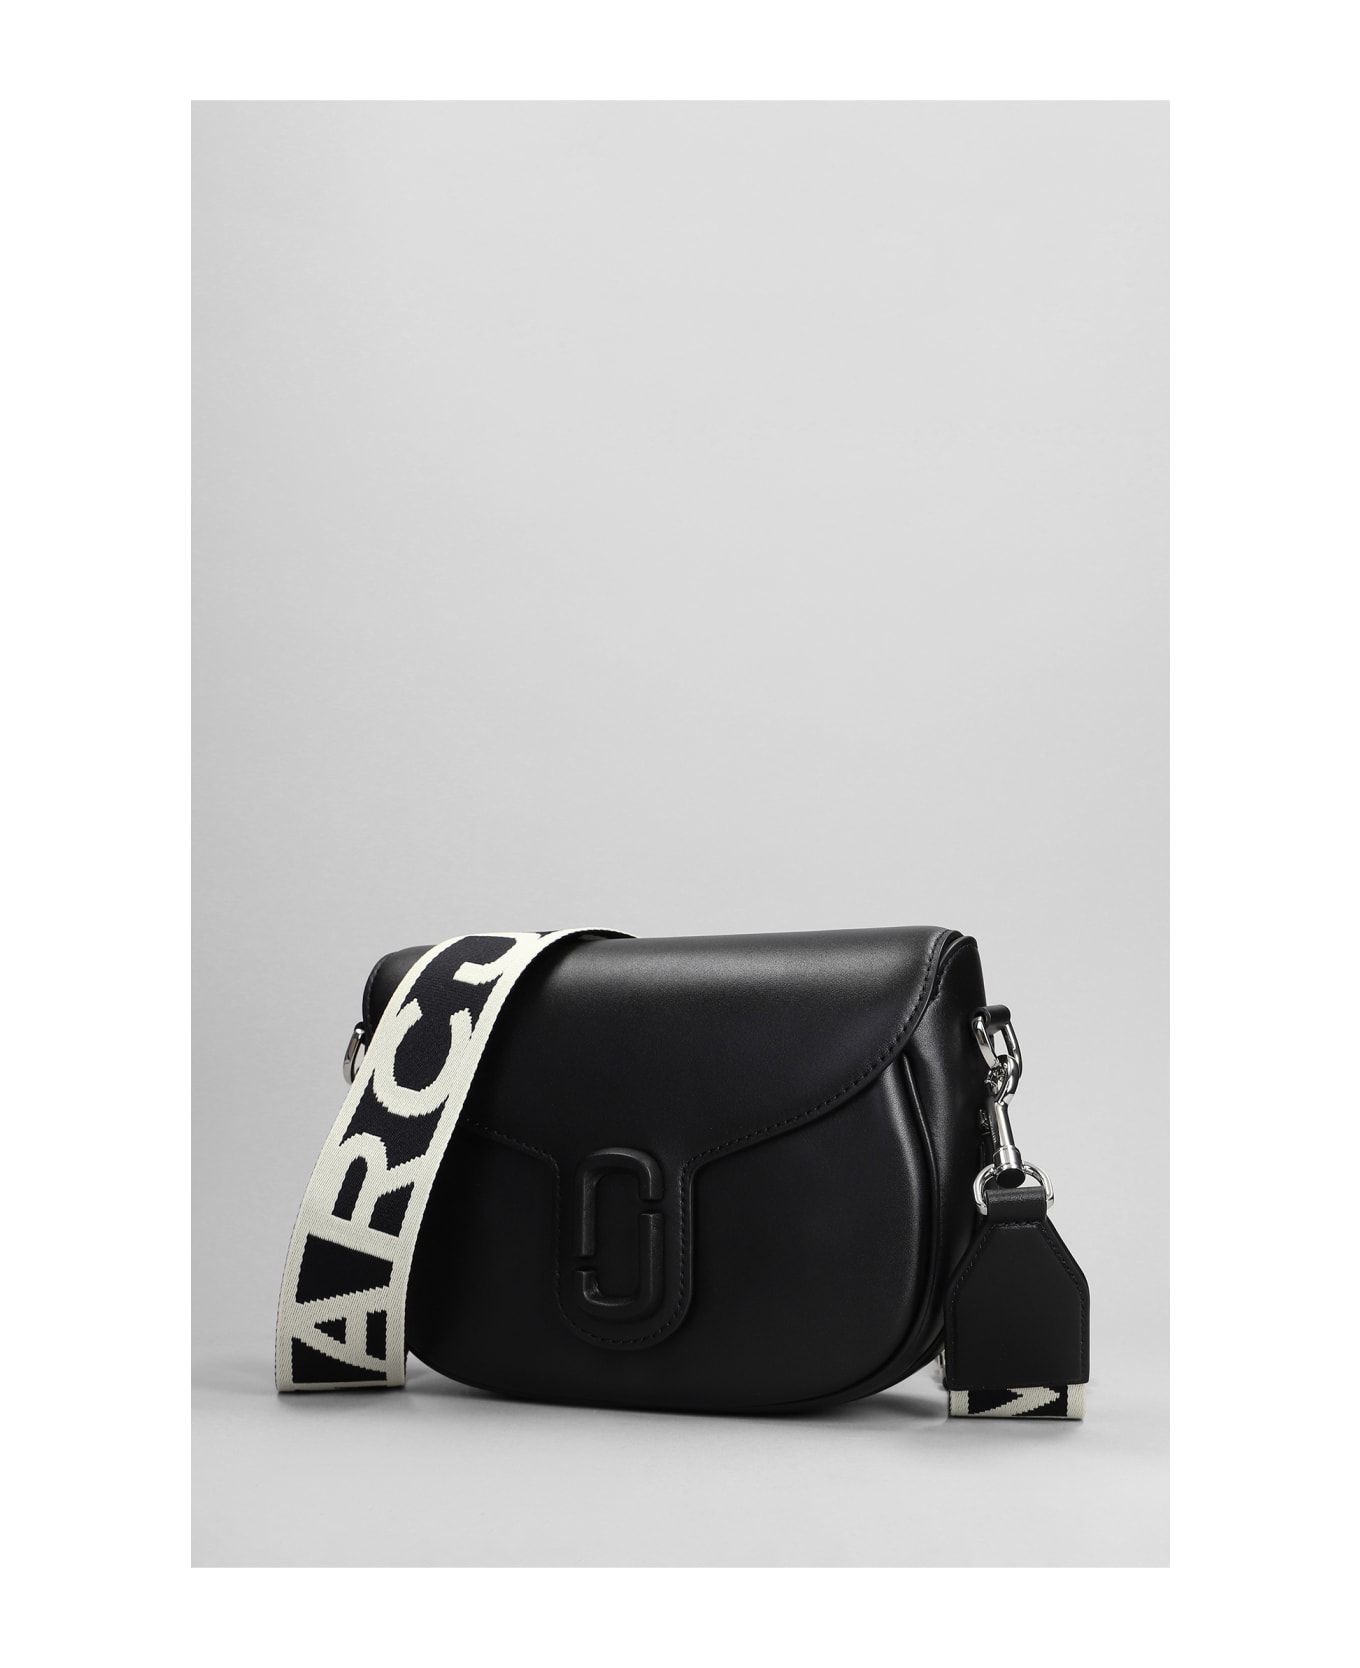 Marc Jacobs Shoulder Bag In Black Leather - black